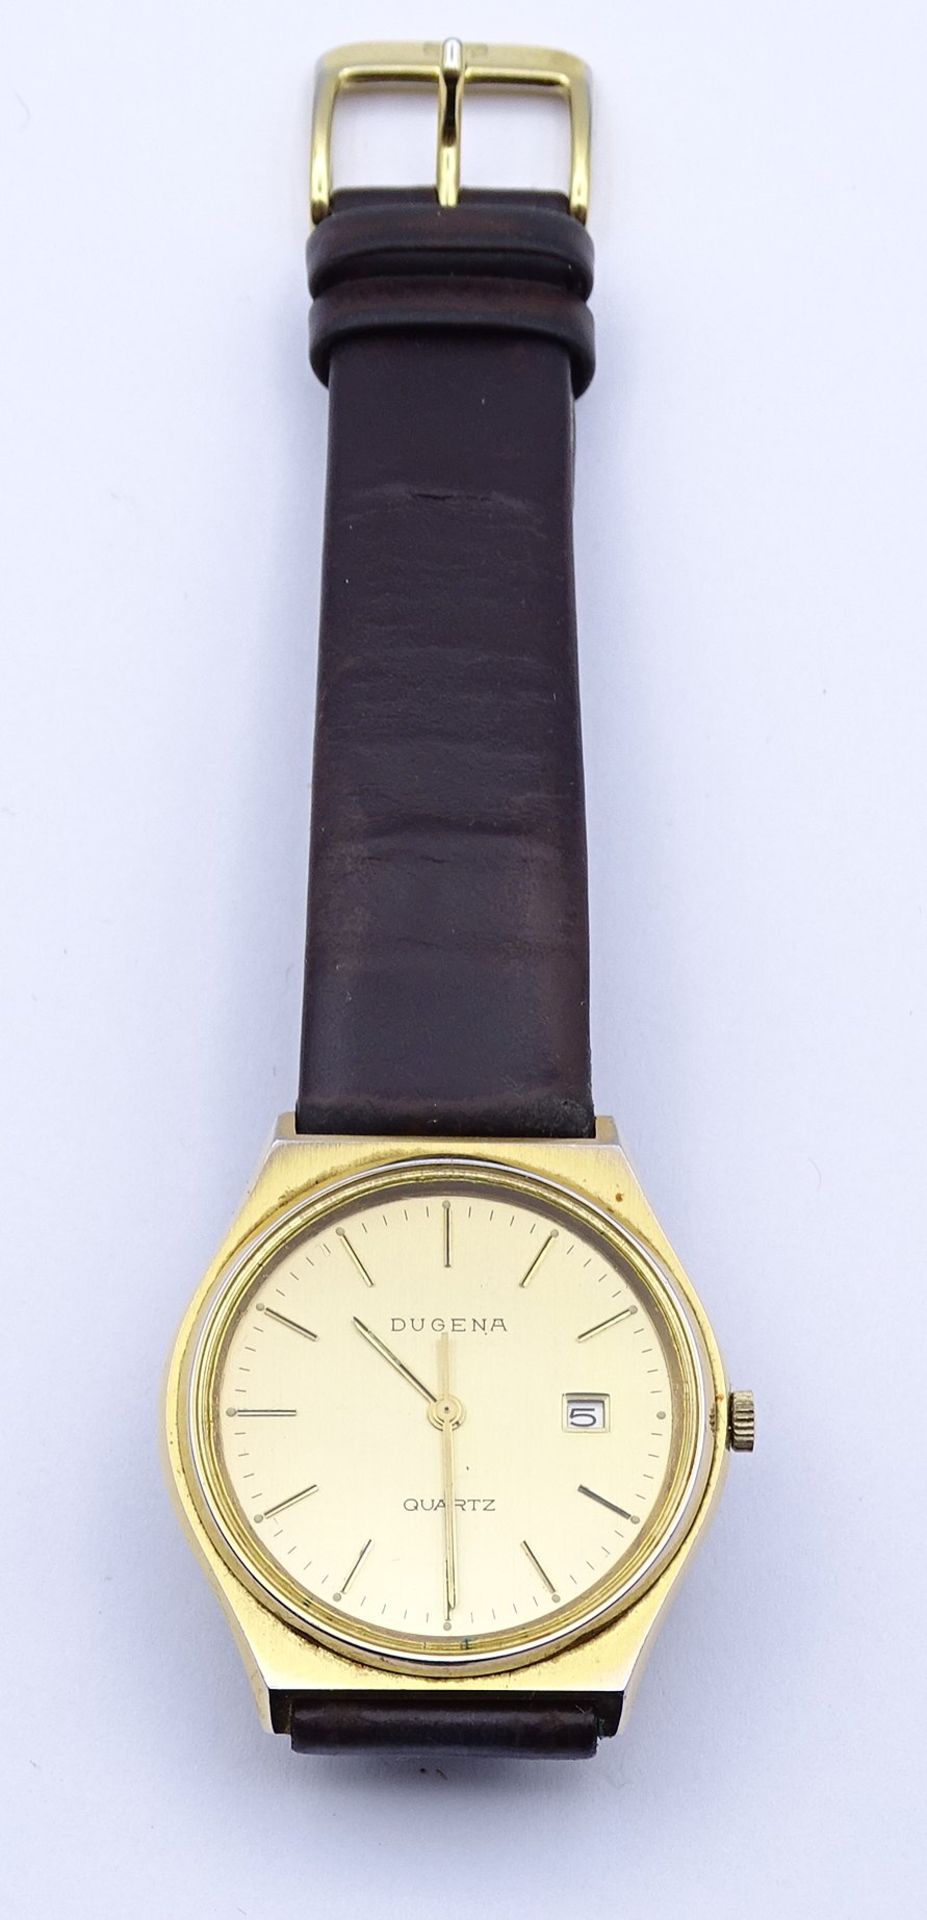 Herren Armbanduhr "Dugena", Quartzwerk, Funktion nicht überprüft, Gehäuse 34x34mm, Rückseite mit Gr - Bild 3 aus 3